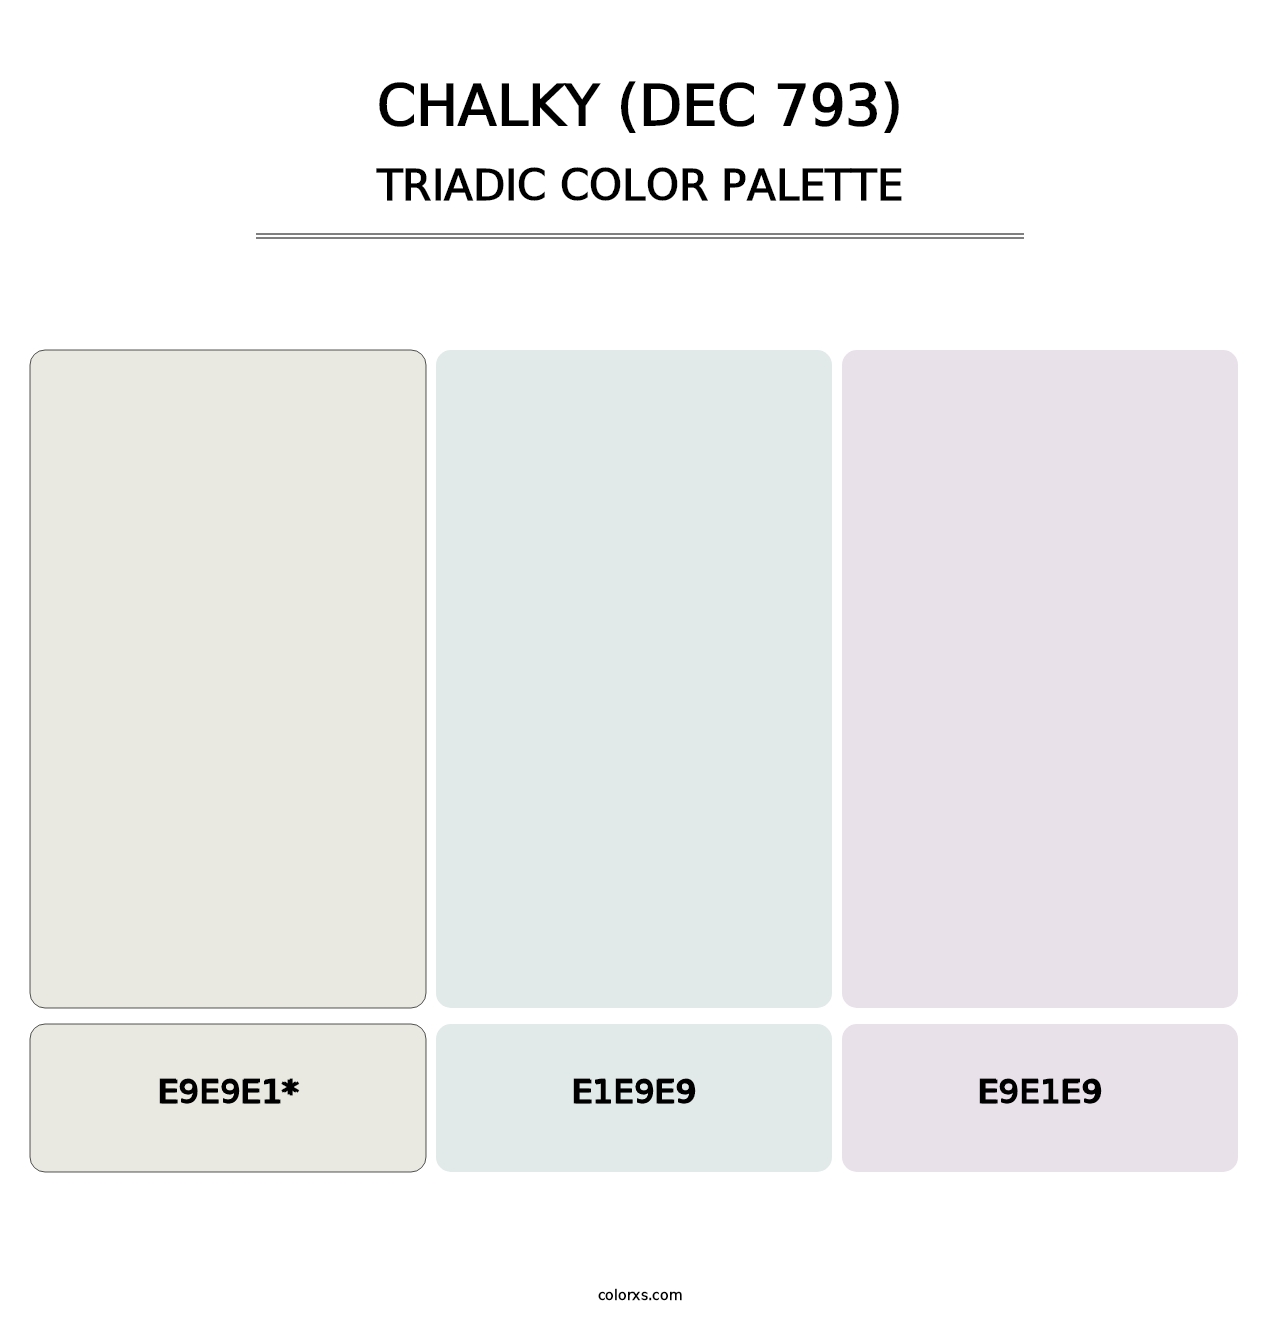 Chalky (DEC 793) - Triadic Color Palette